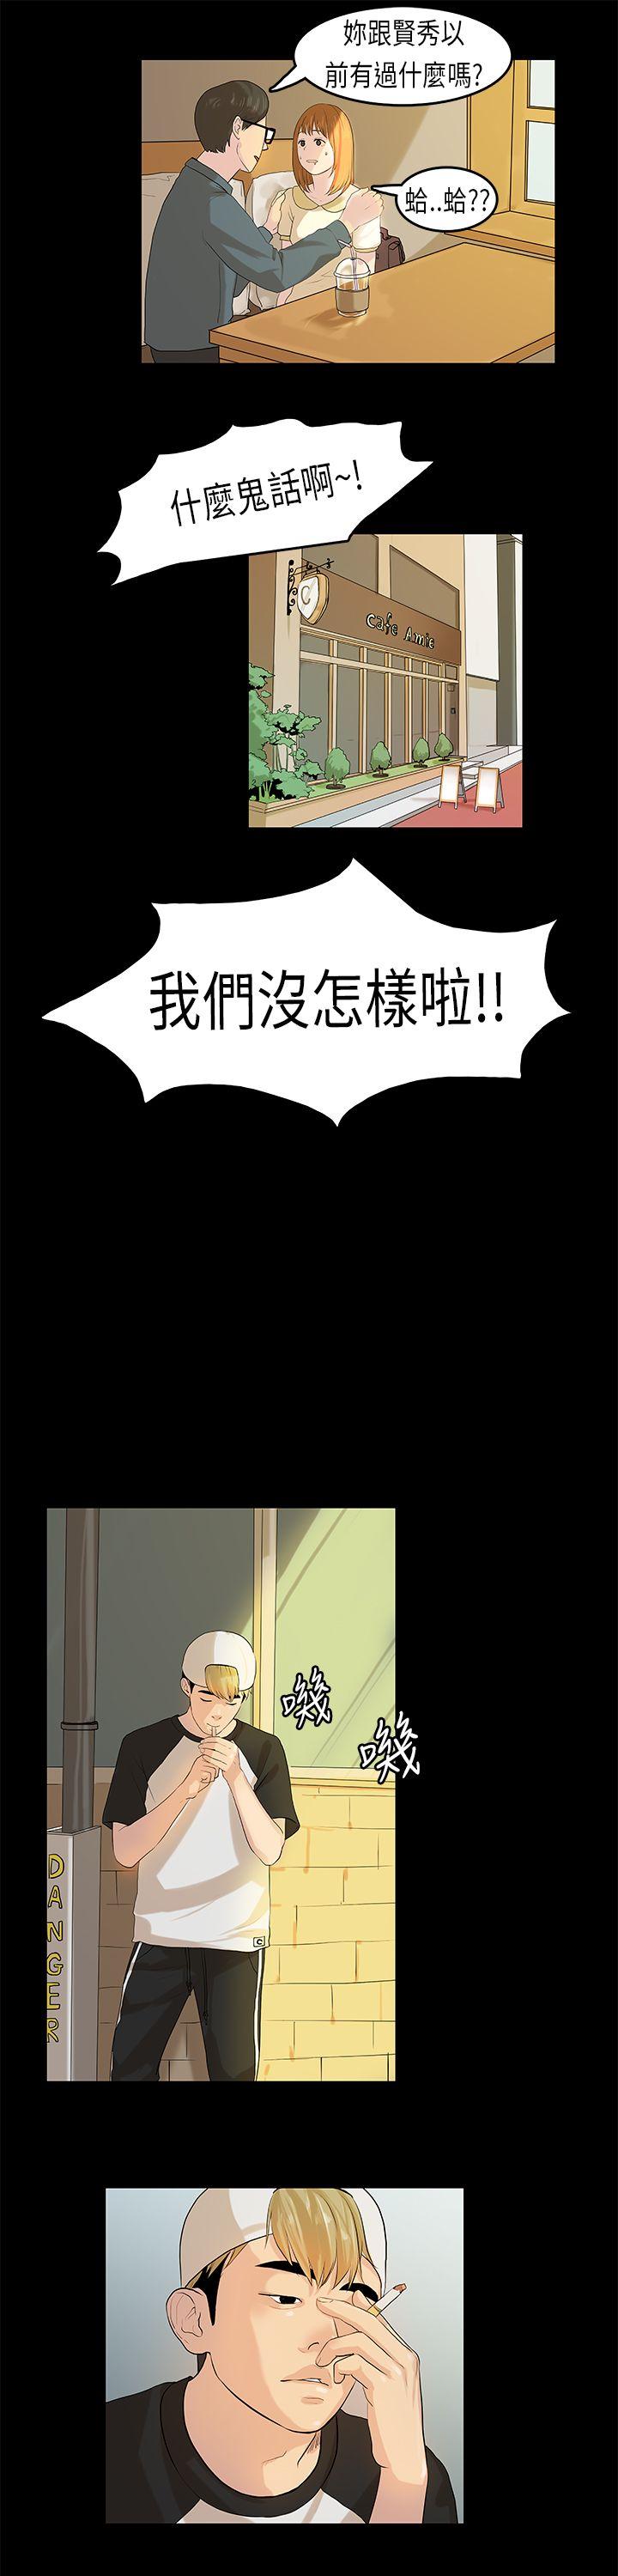 初恋症候群  第7话 漫画图片6.jpg